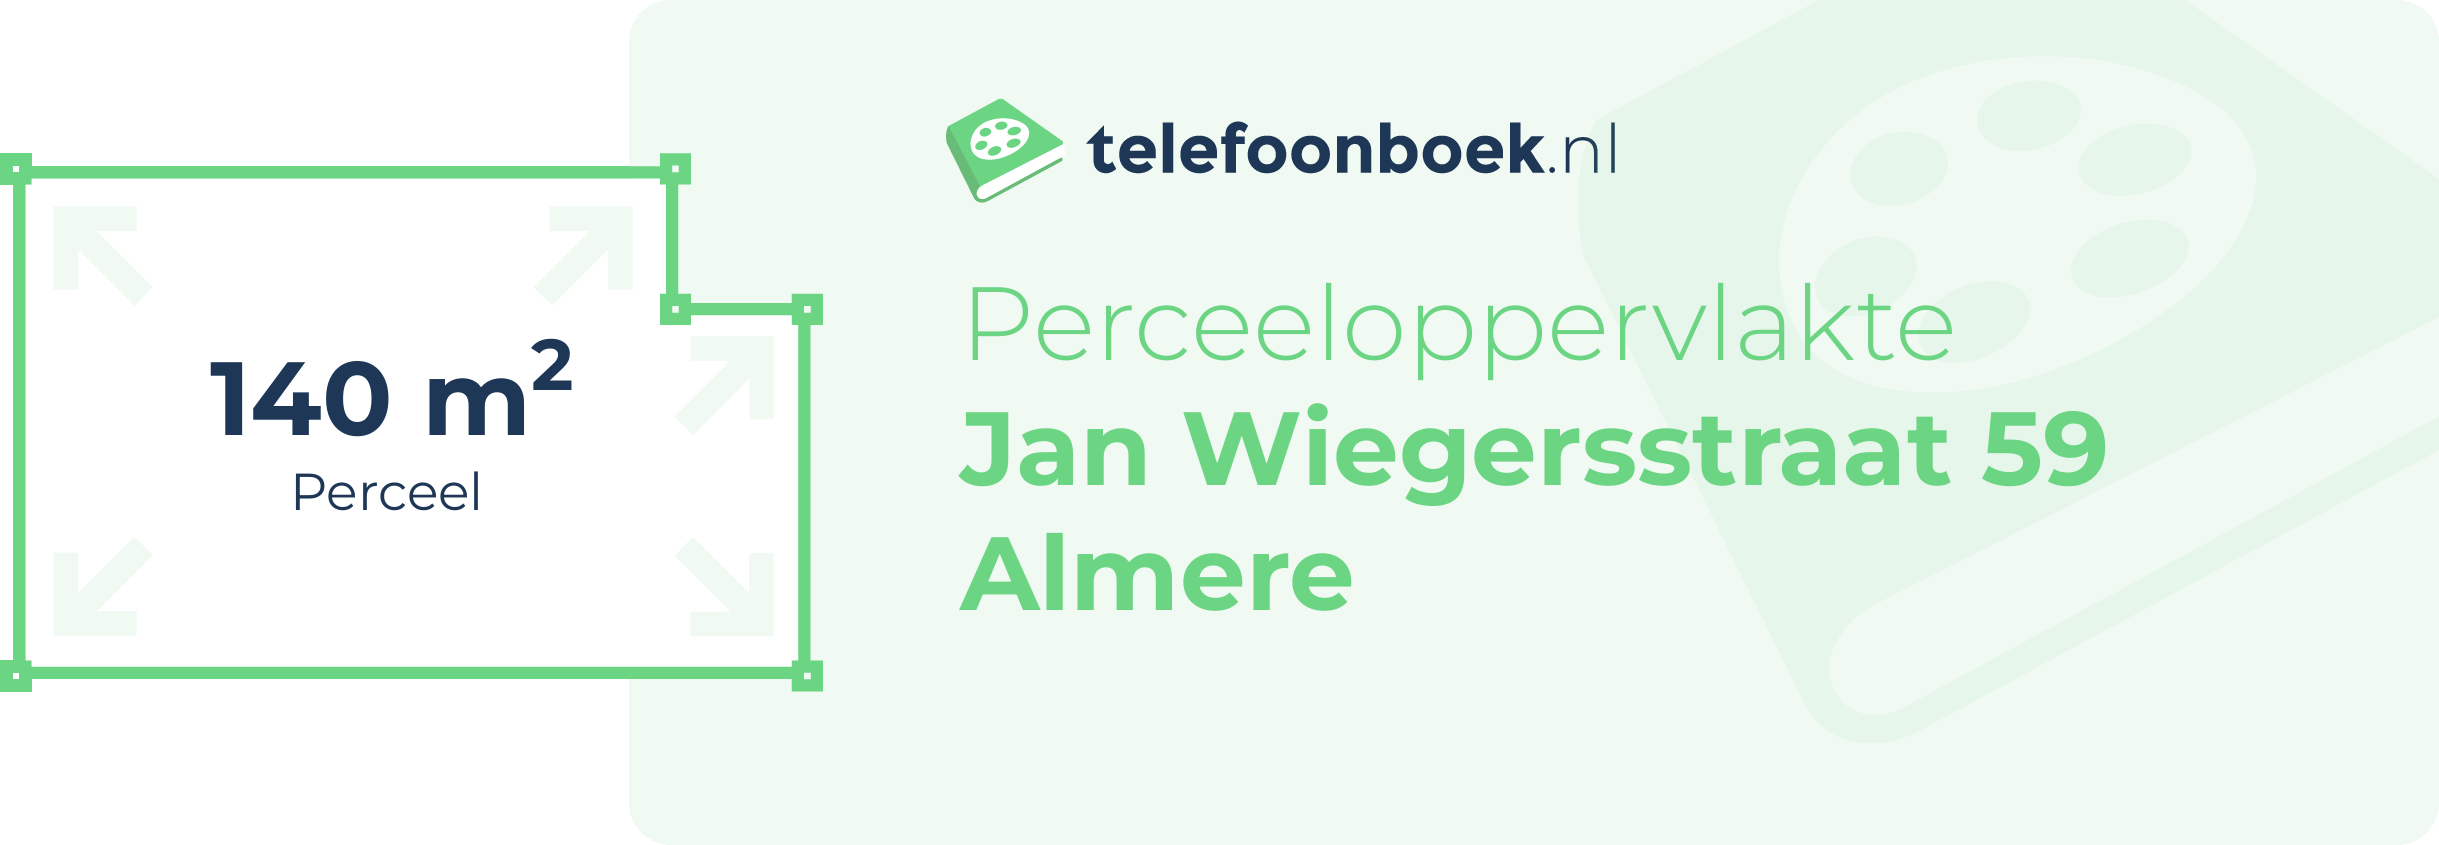 Perceeloppervlakte Jan Wiegersstraat 59 Almere